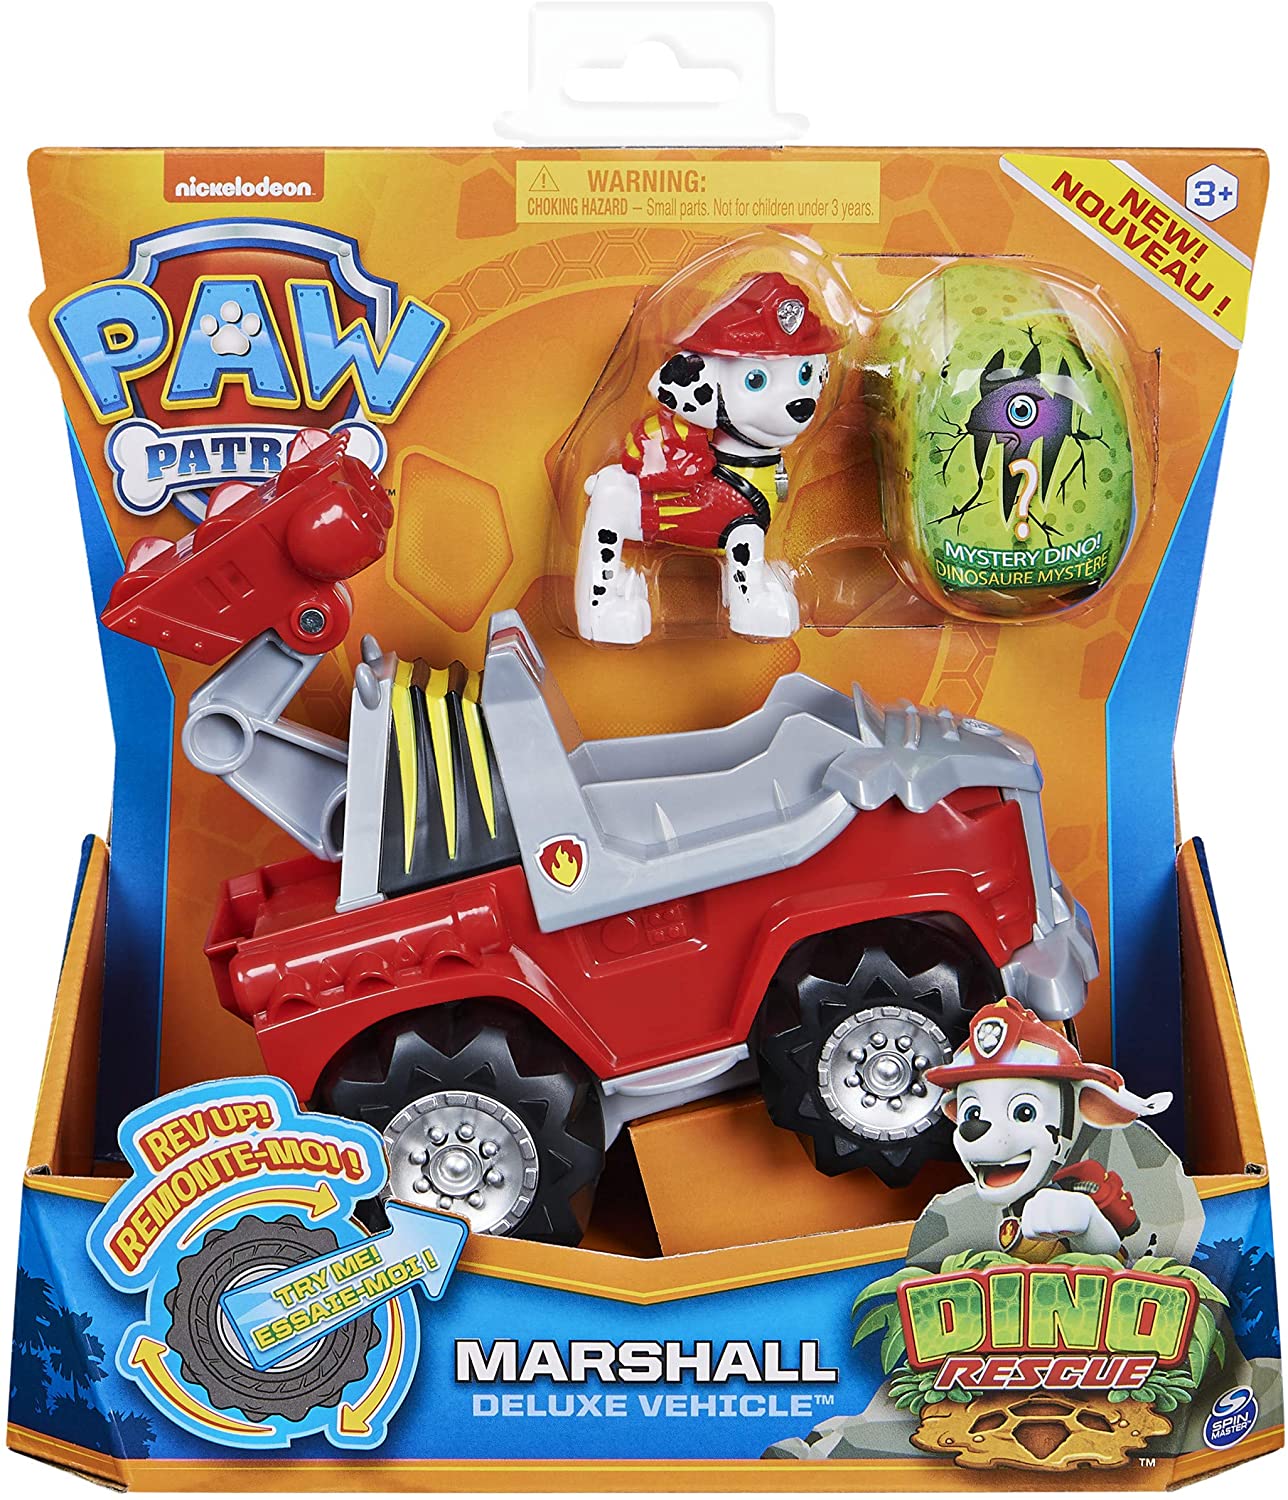 Marshall Dino Rescue Paw Patrol figurine + vehicle